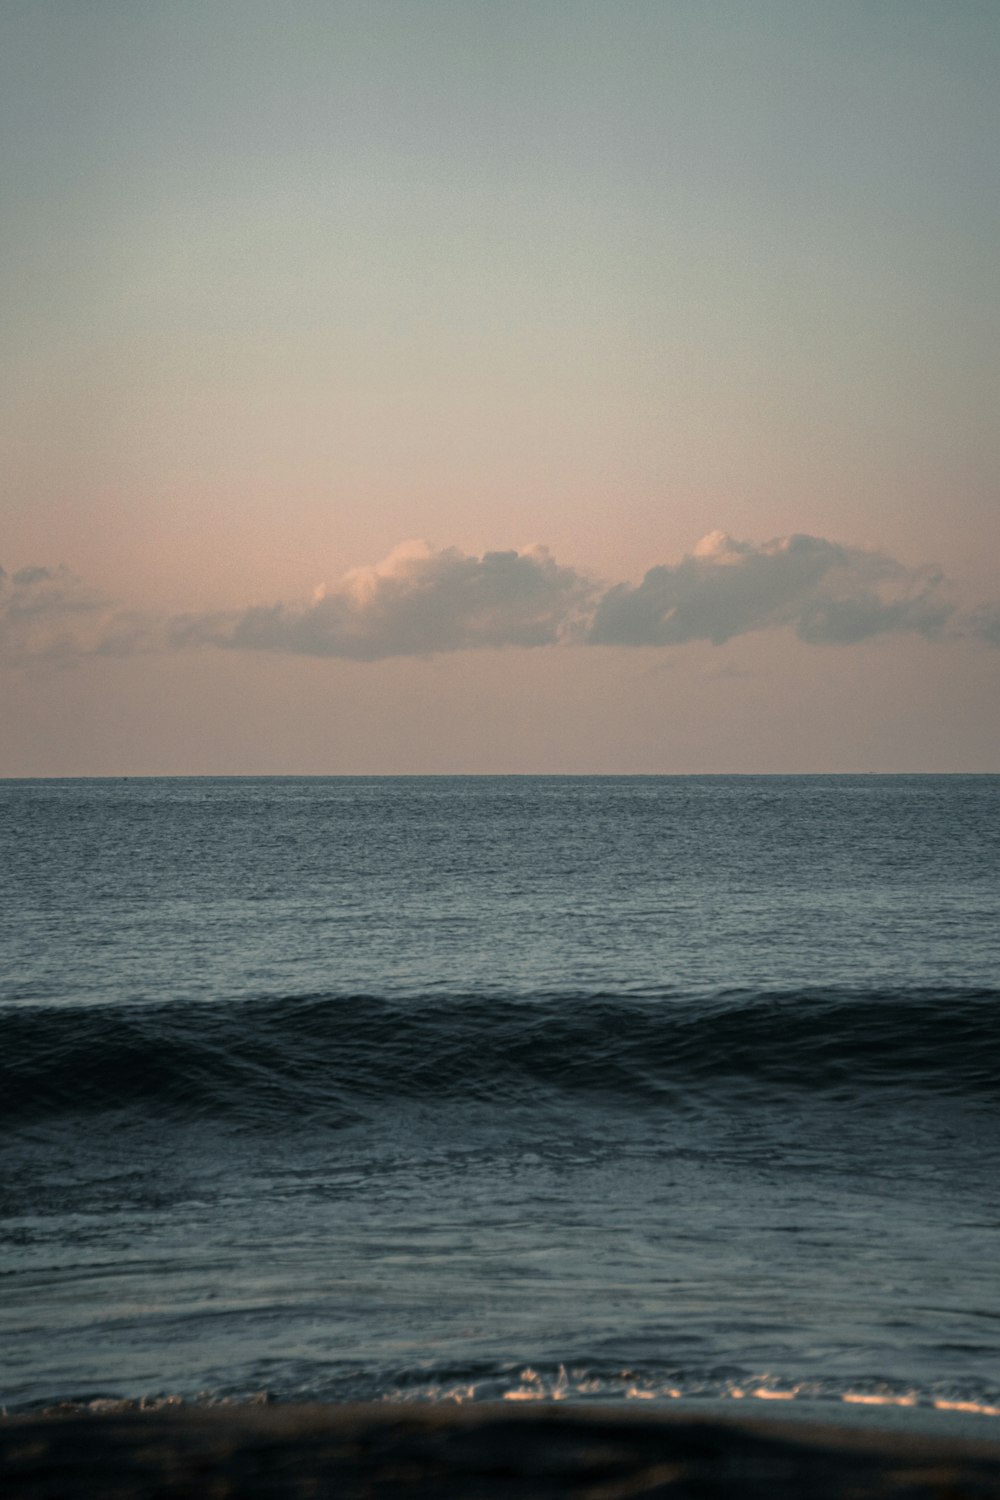 une personne sur une planche de surf sur une vague dans l’océan